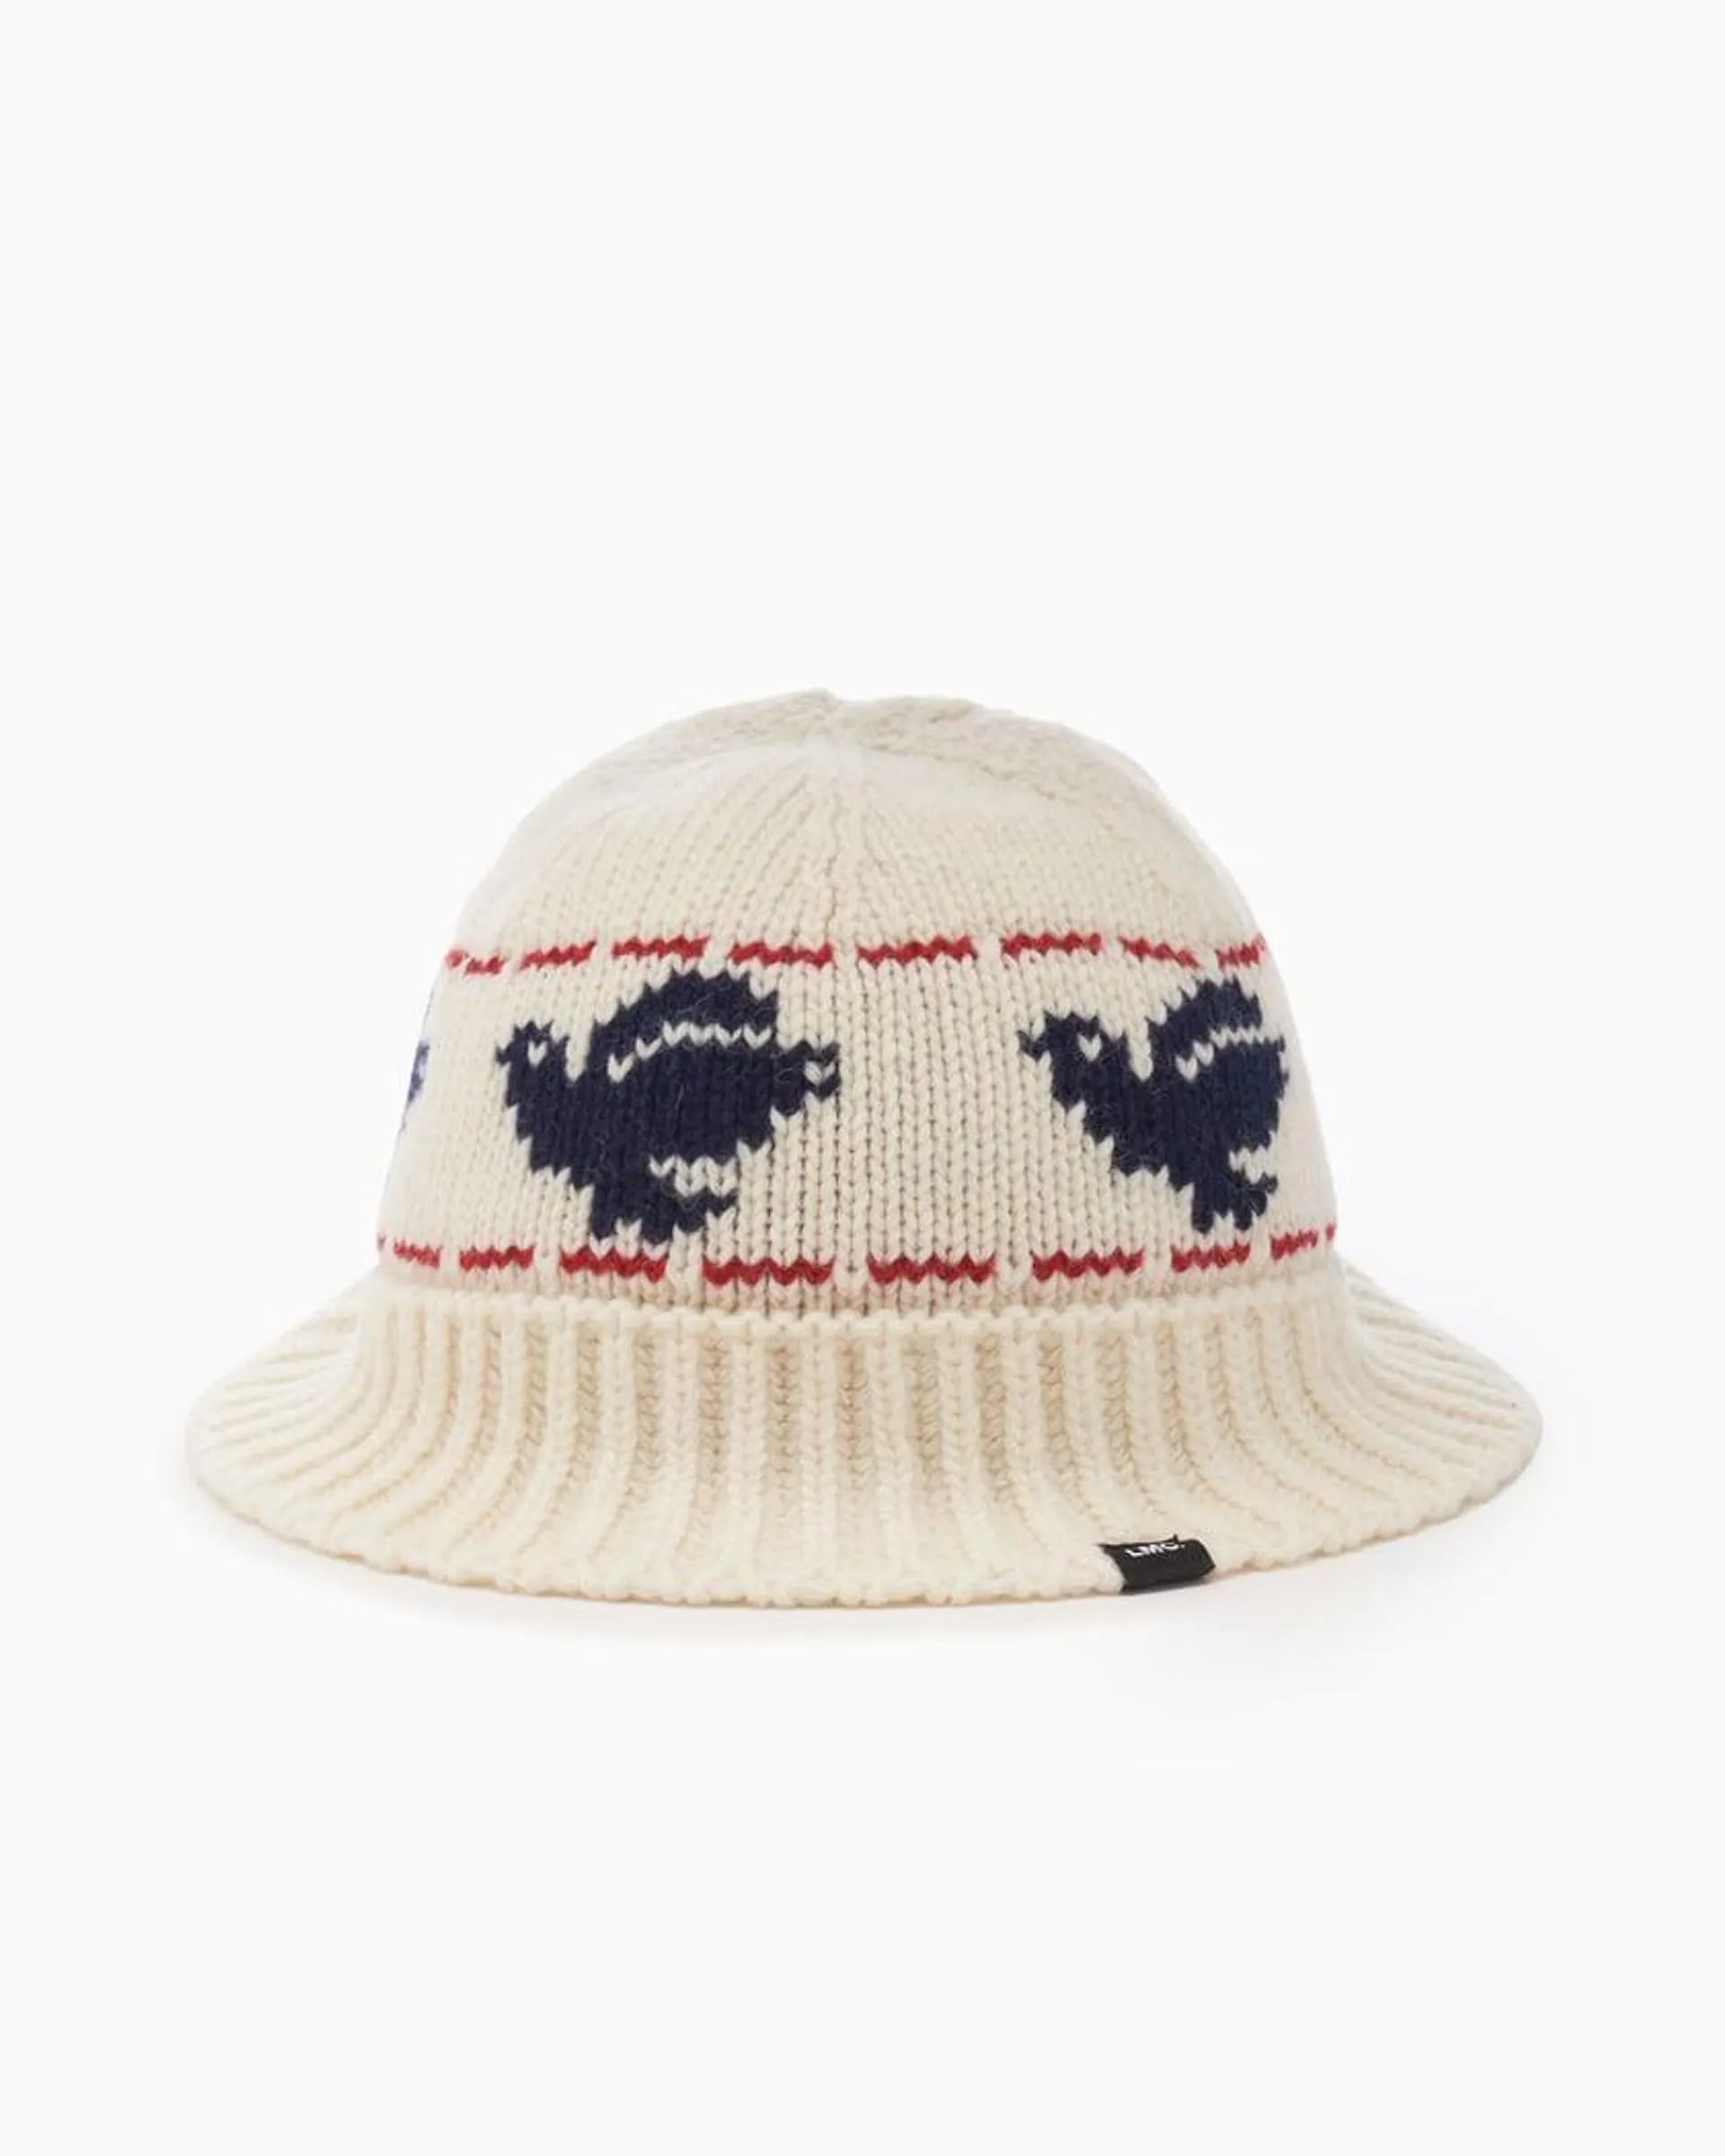 LMC Peace Unisex Crochet Bucket Hat